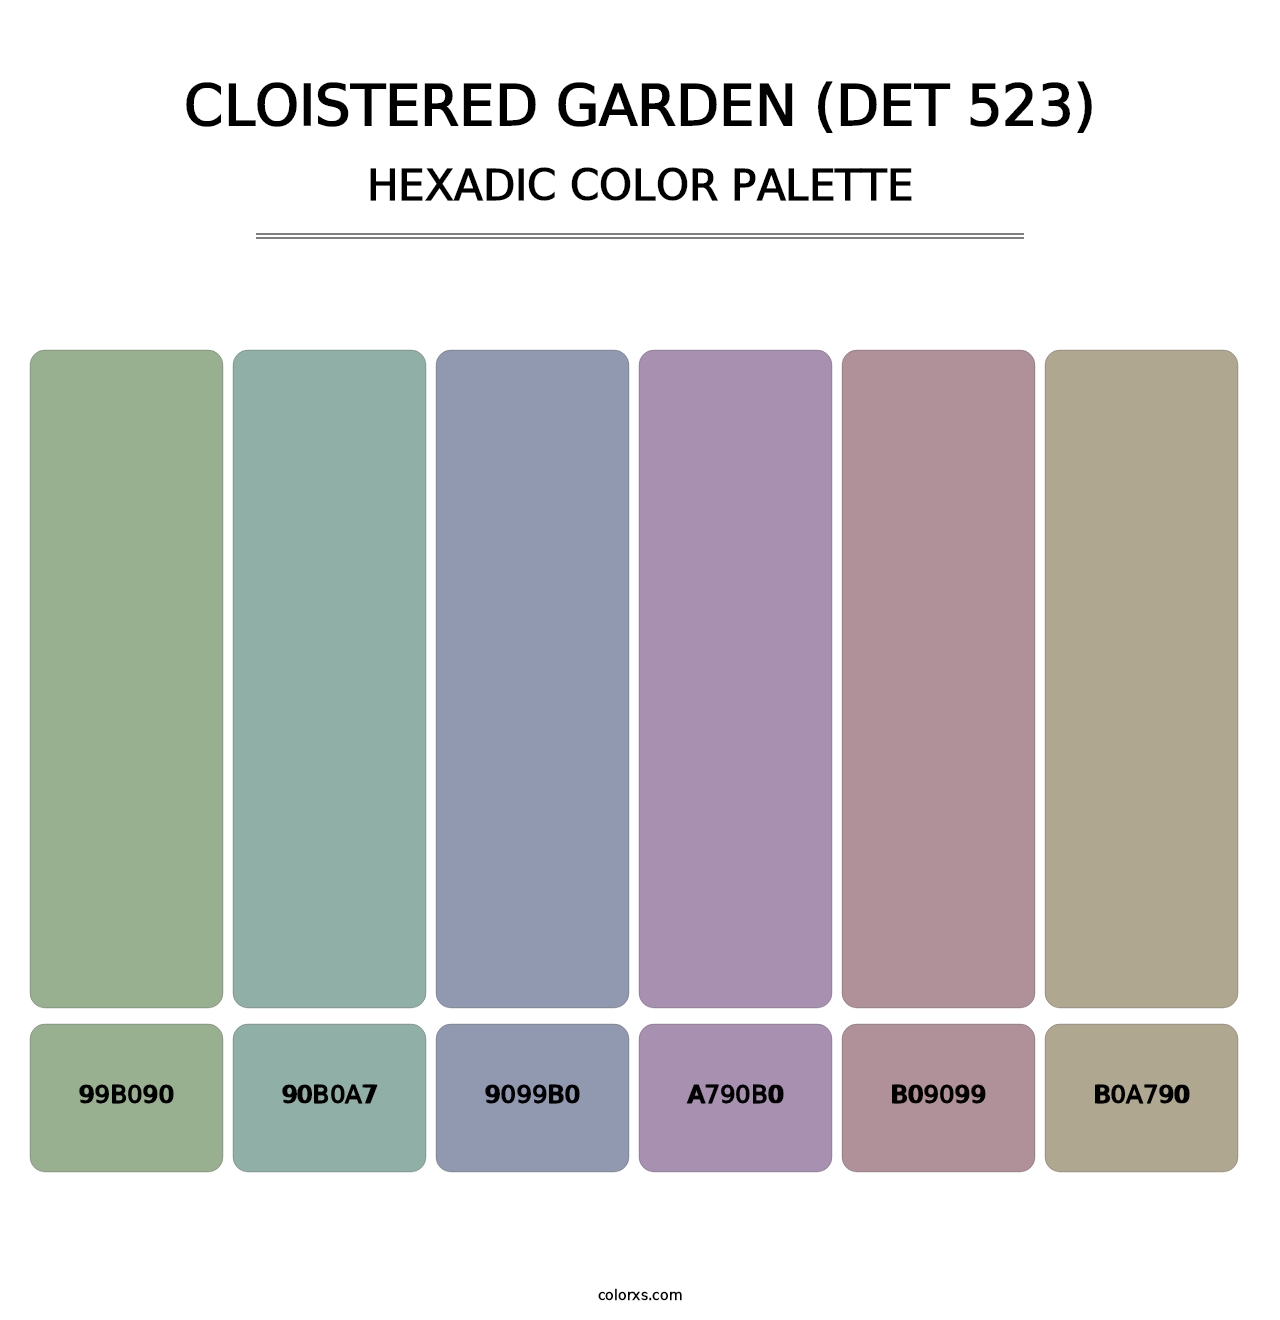 Cloistered Garden (DET 523) - Hexadic Color Palette